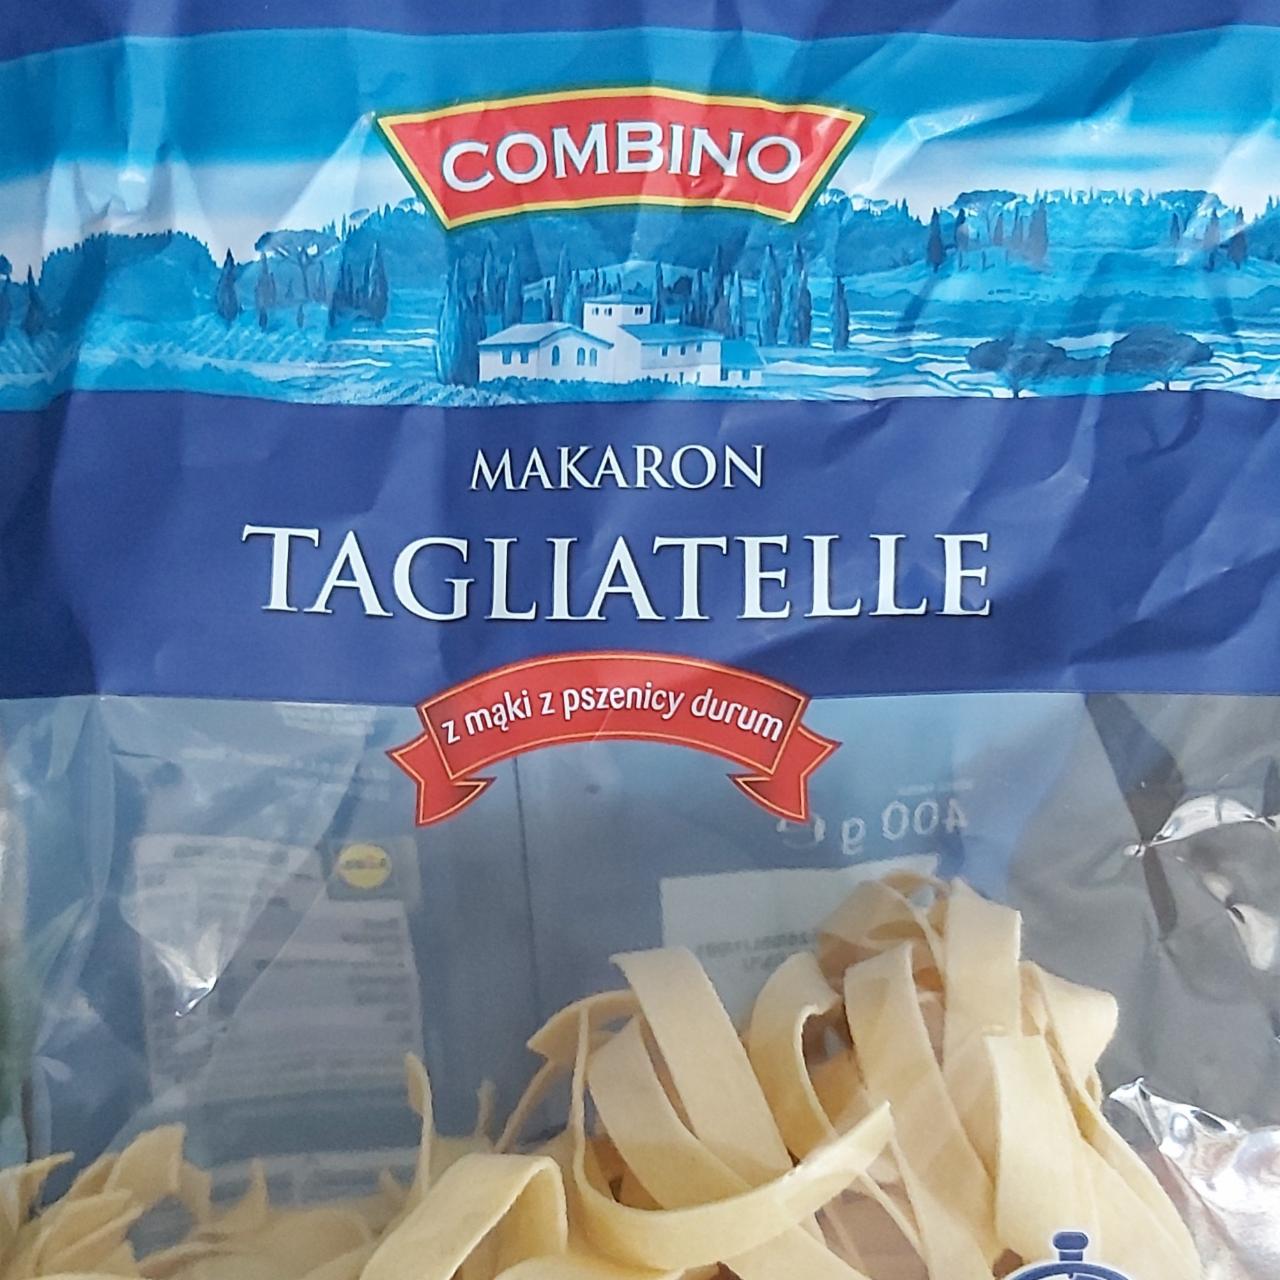 Zdjęcia - Makaron tagliatelle z mąki pszennej durum Combino